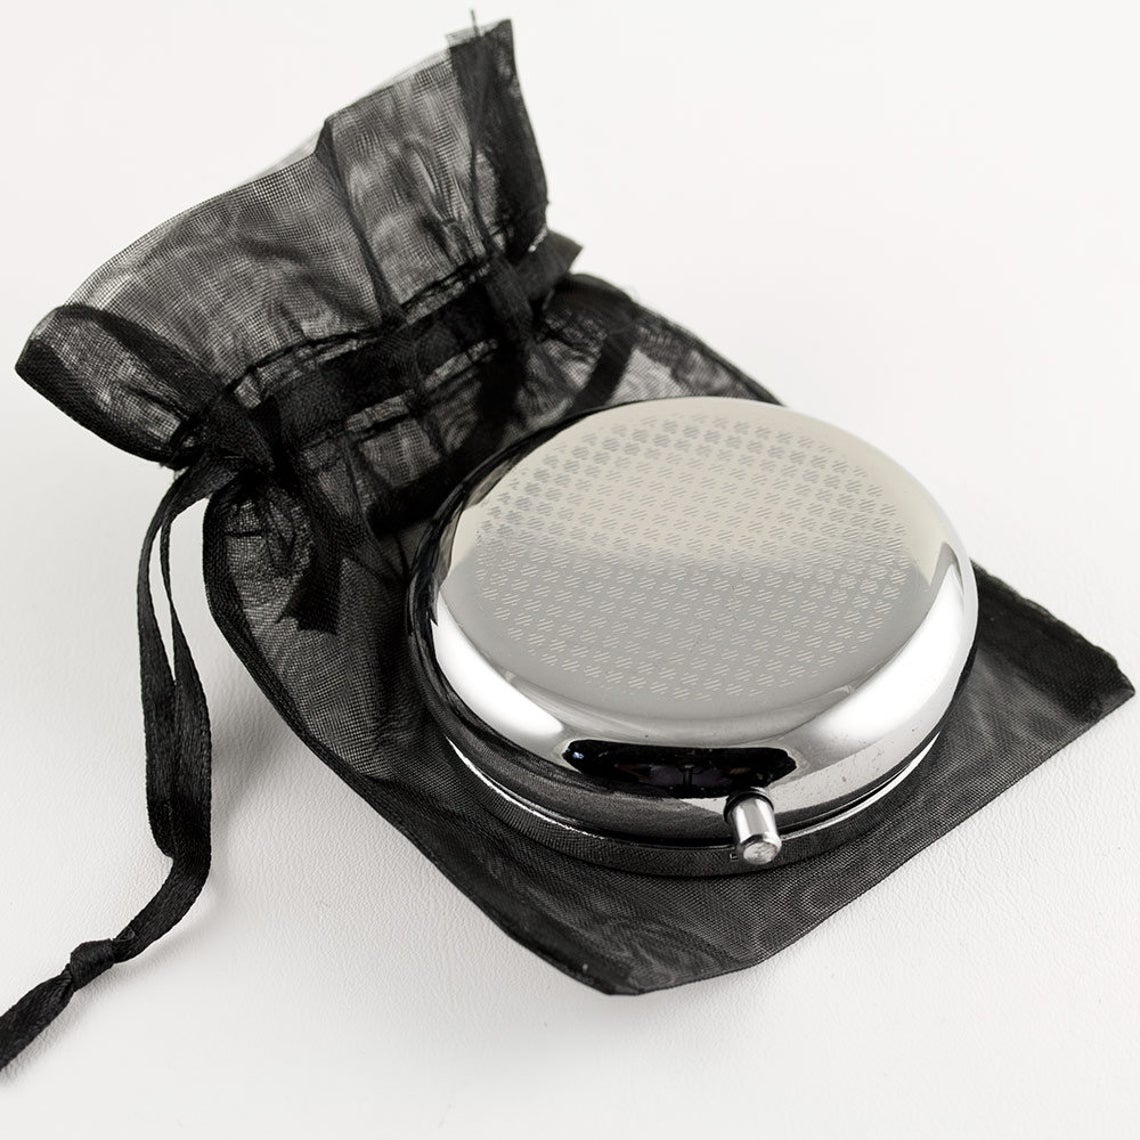 Pill Case Pill Box with Mirror Retro 3 Compartment Small Pill Case for  Purse